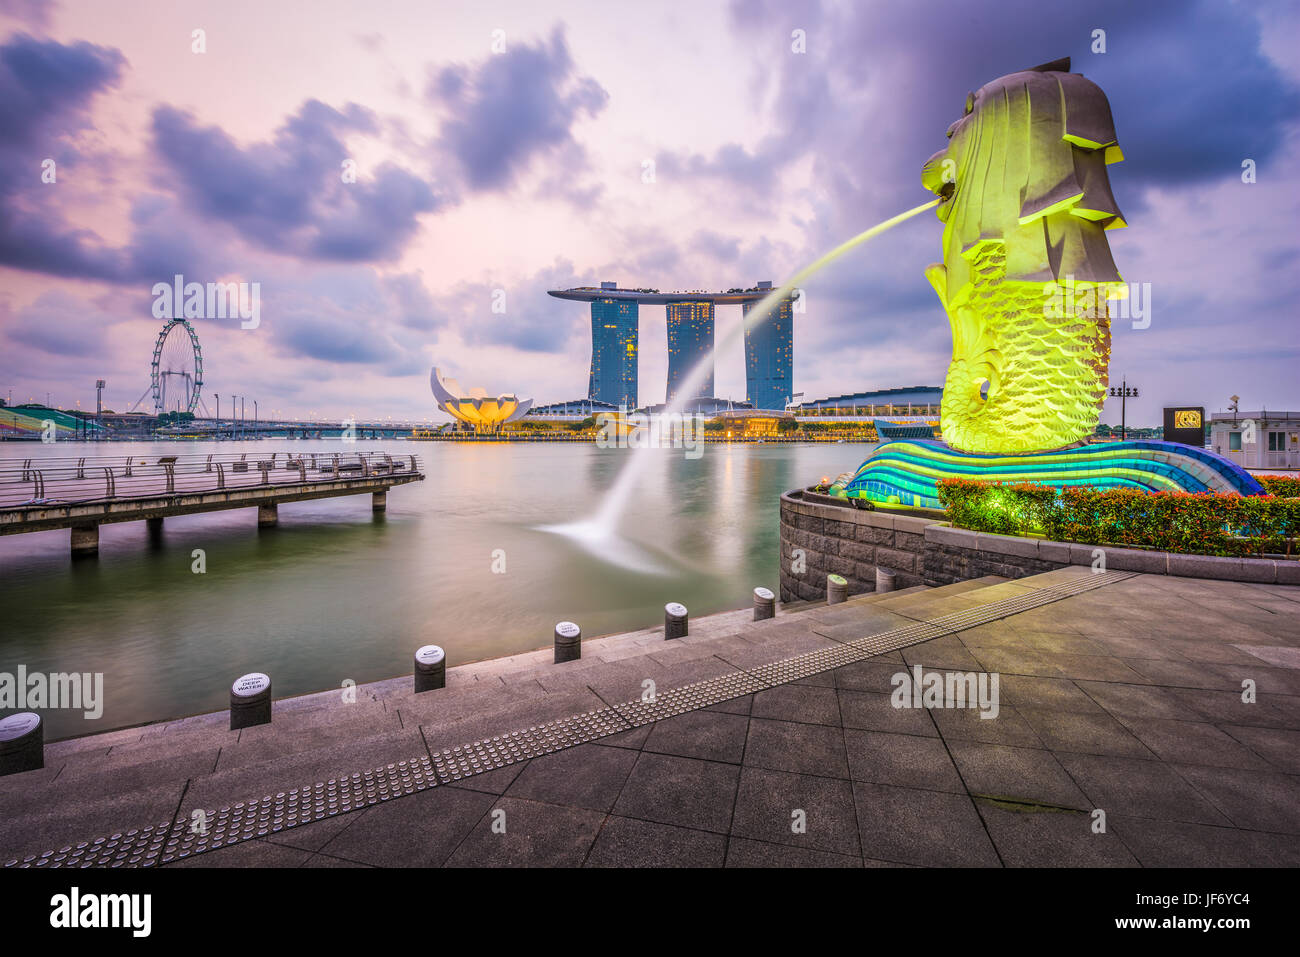 Singapour - septembre 6, 2015 : la fontaine du Merlion à Marina Bay. Le Merlion est une icône marketing utilisé comme mascotte et la personnification de tr Banque D'Images